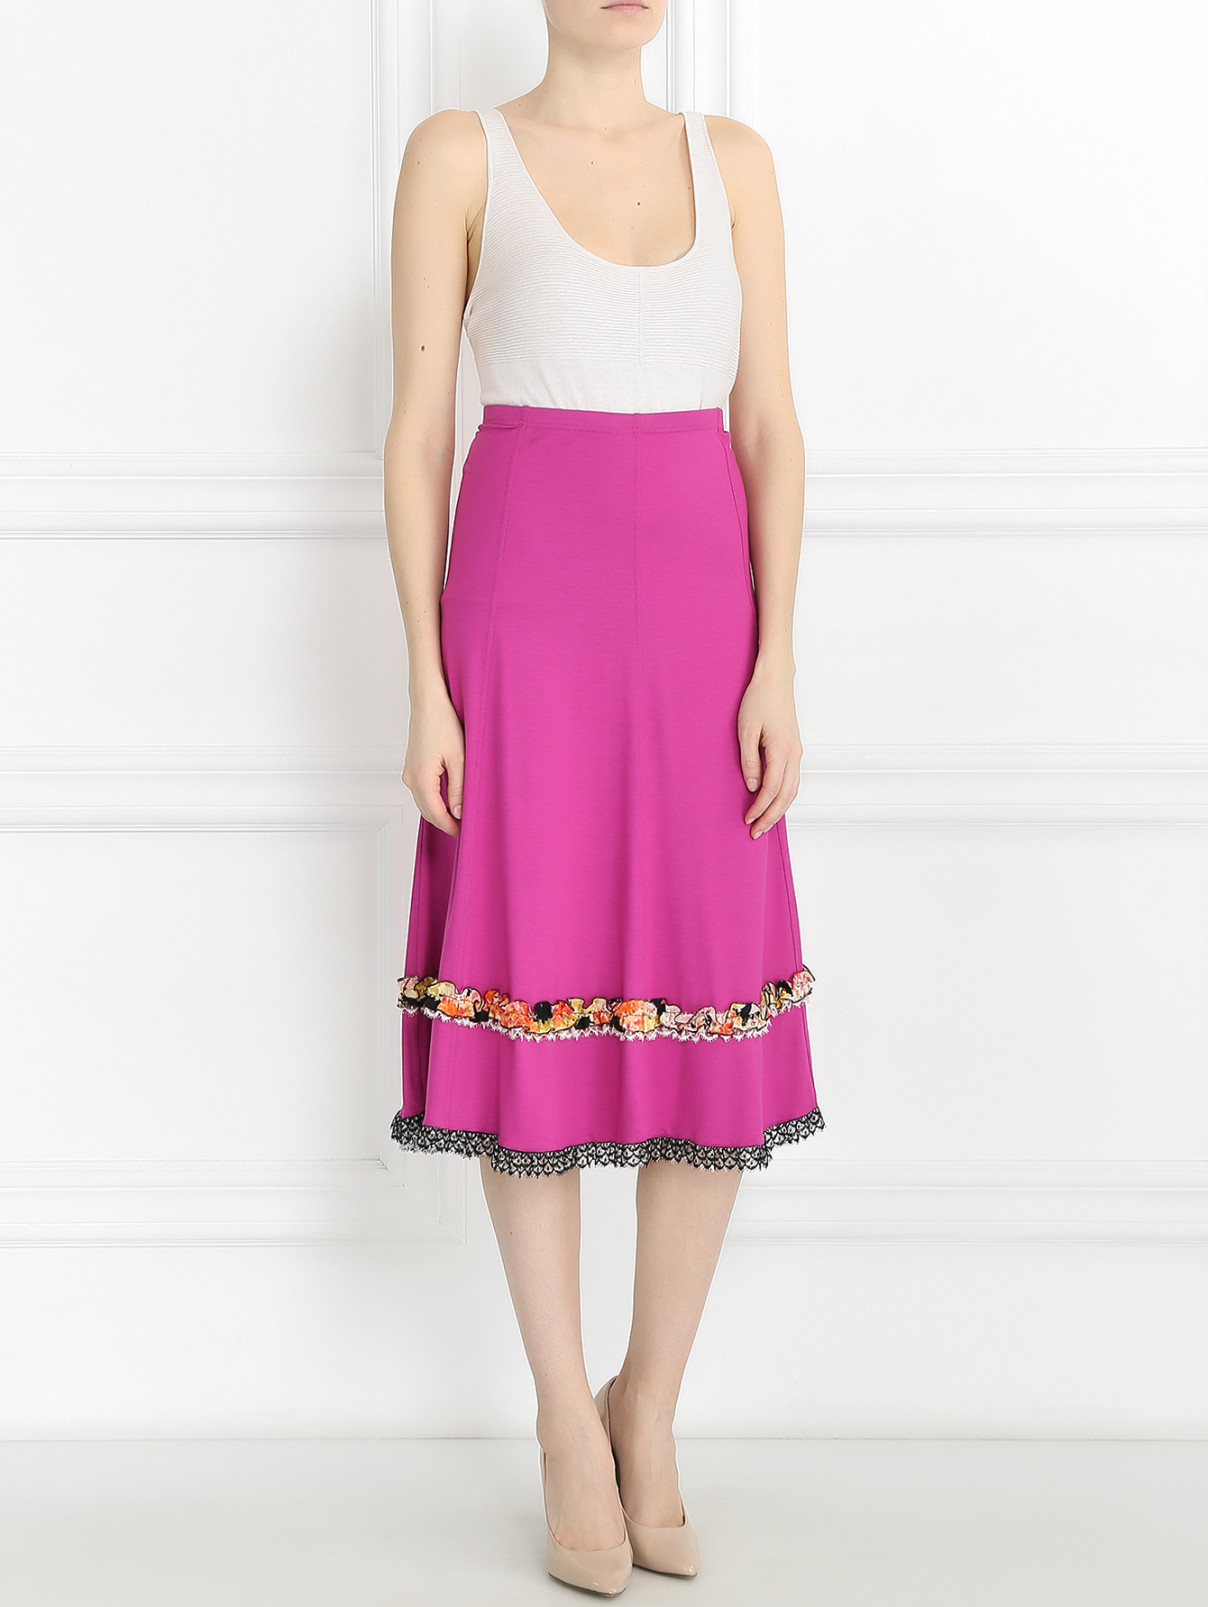 Трикотажная юбка с аппликацией Mariella Burani  –  Модель Общий вид  – Цвет:  Розовый